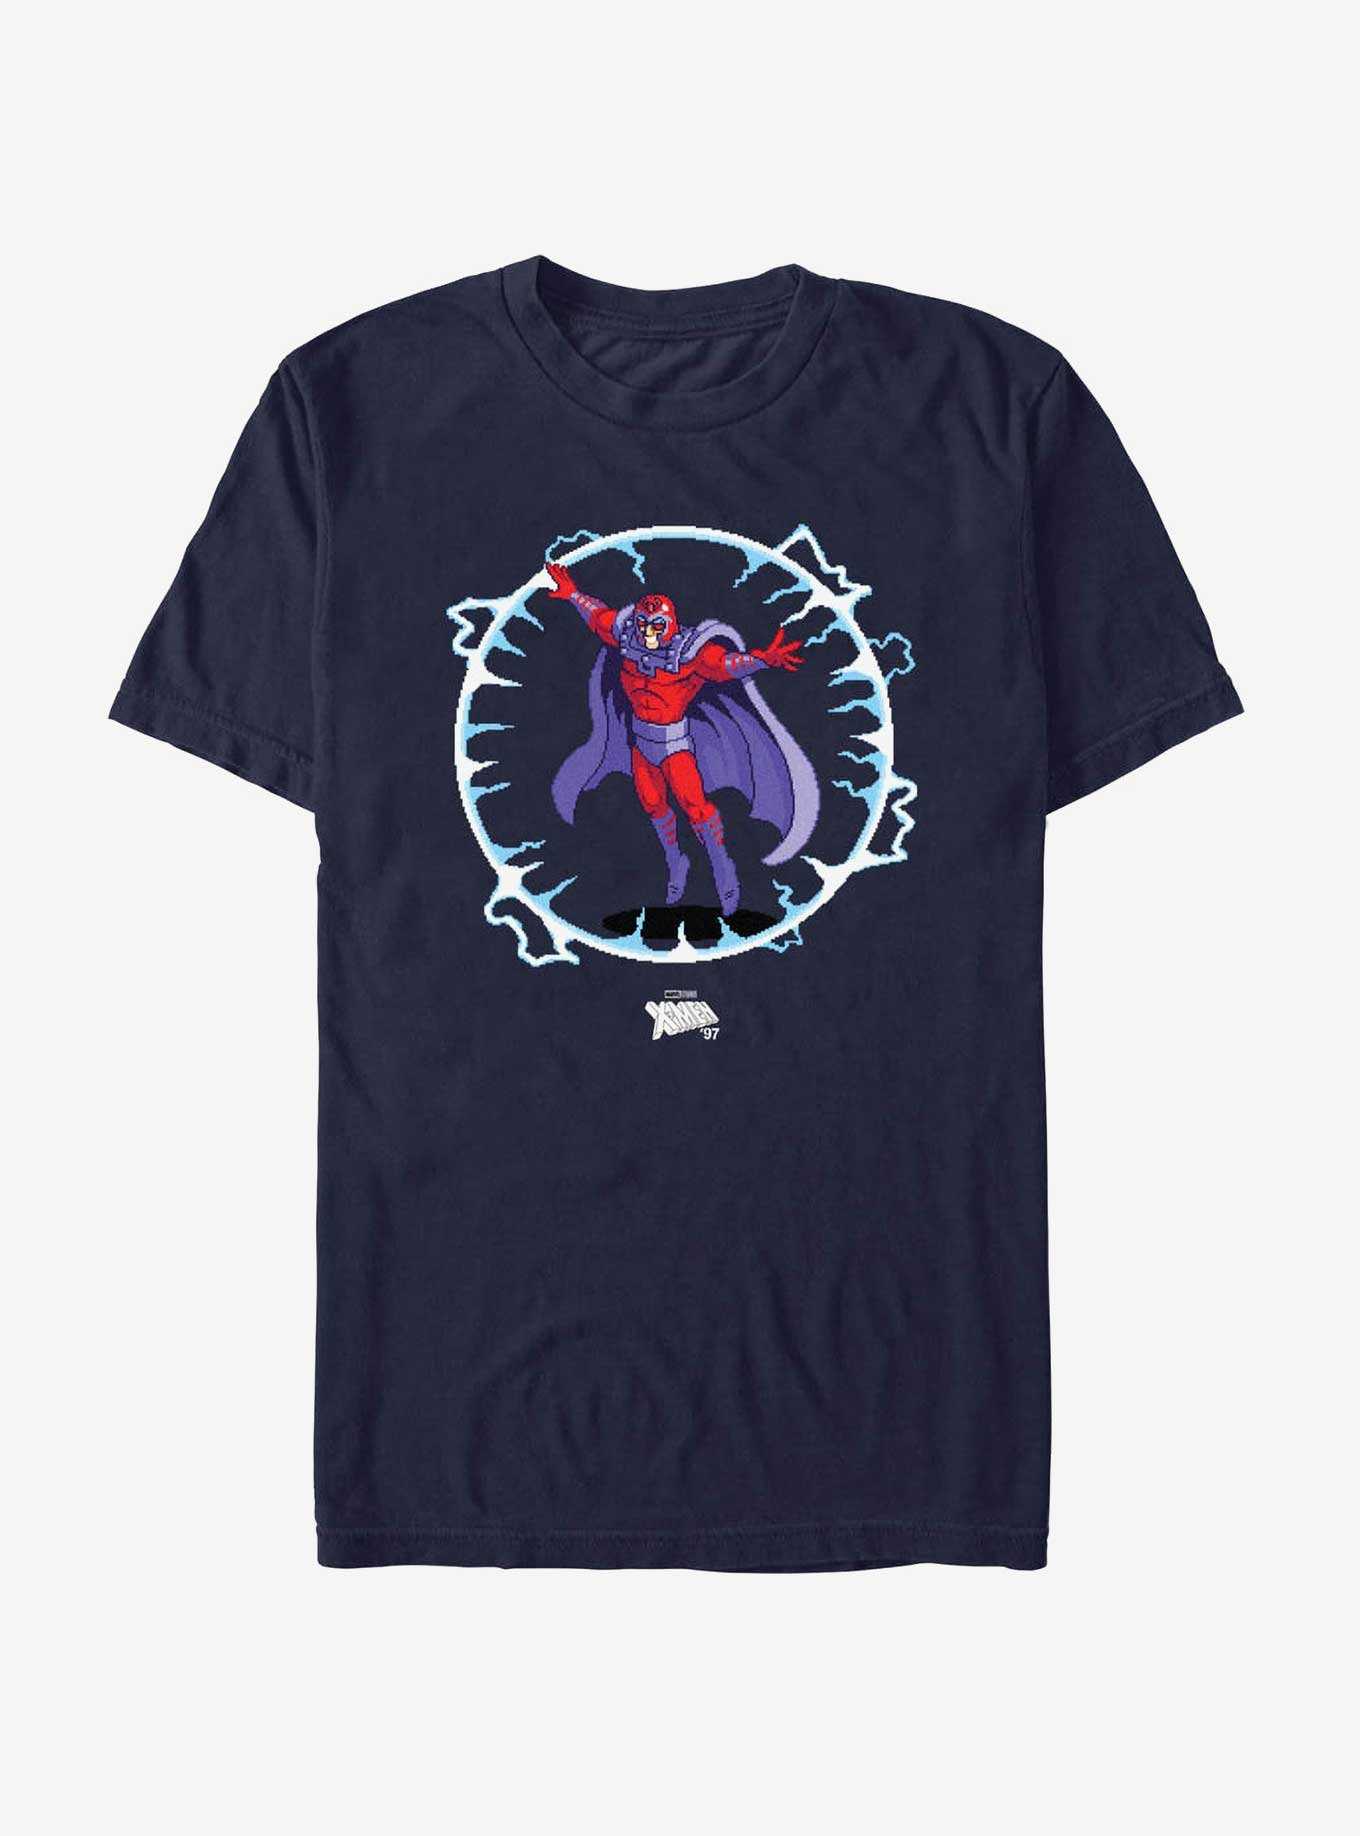 X-Men '97 Magneto PixelArt T-Shirt, , hi-res